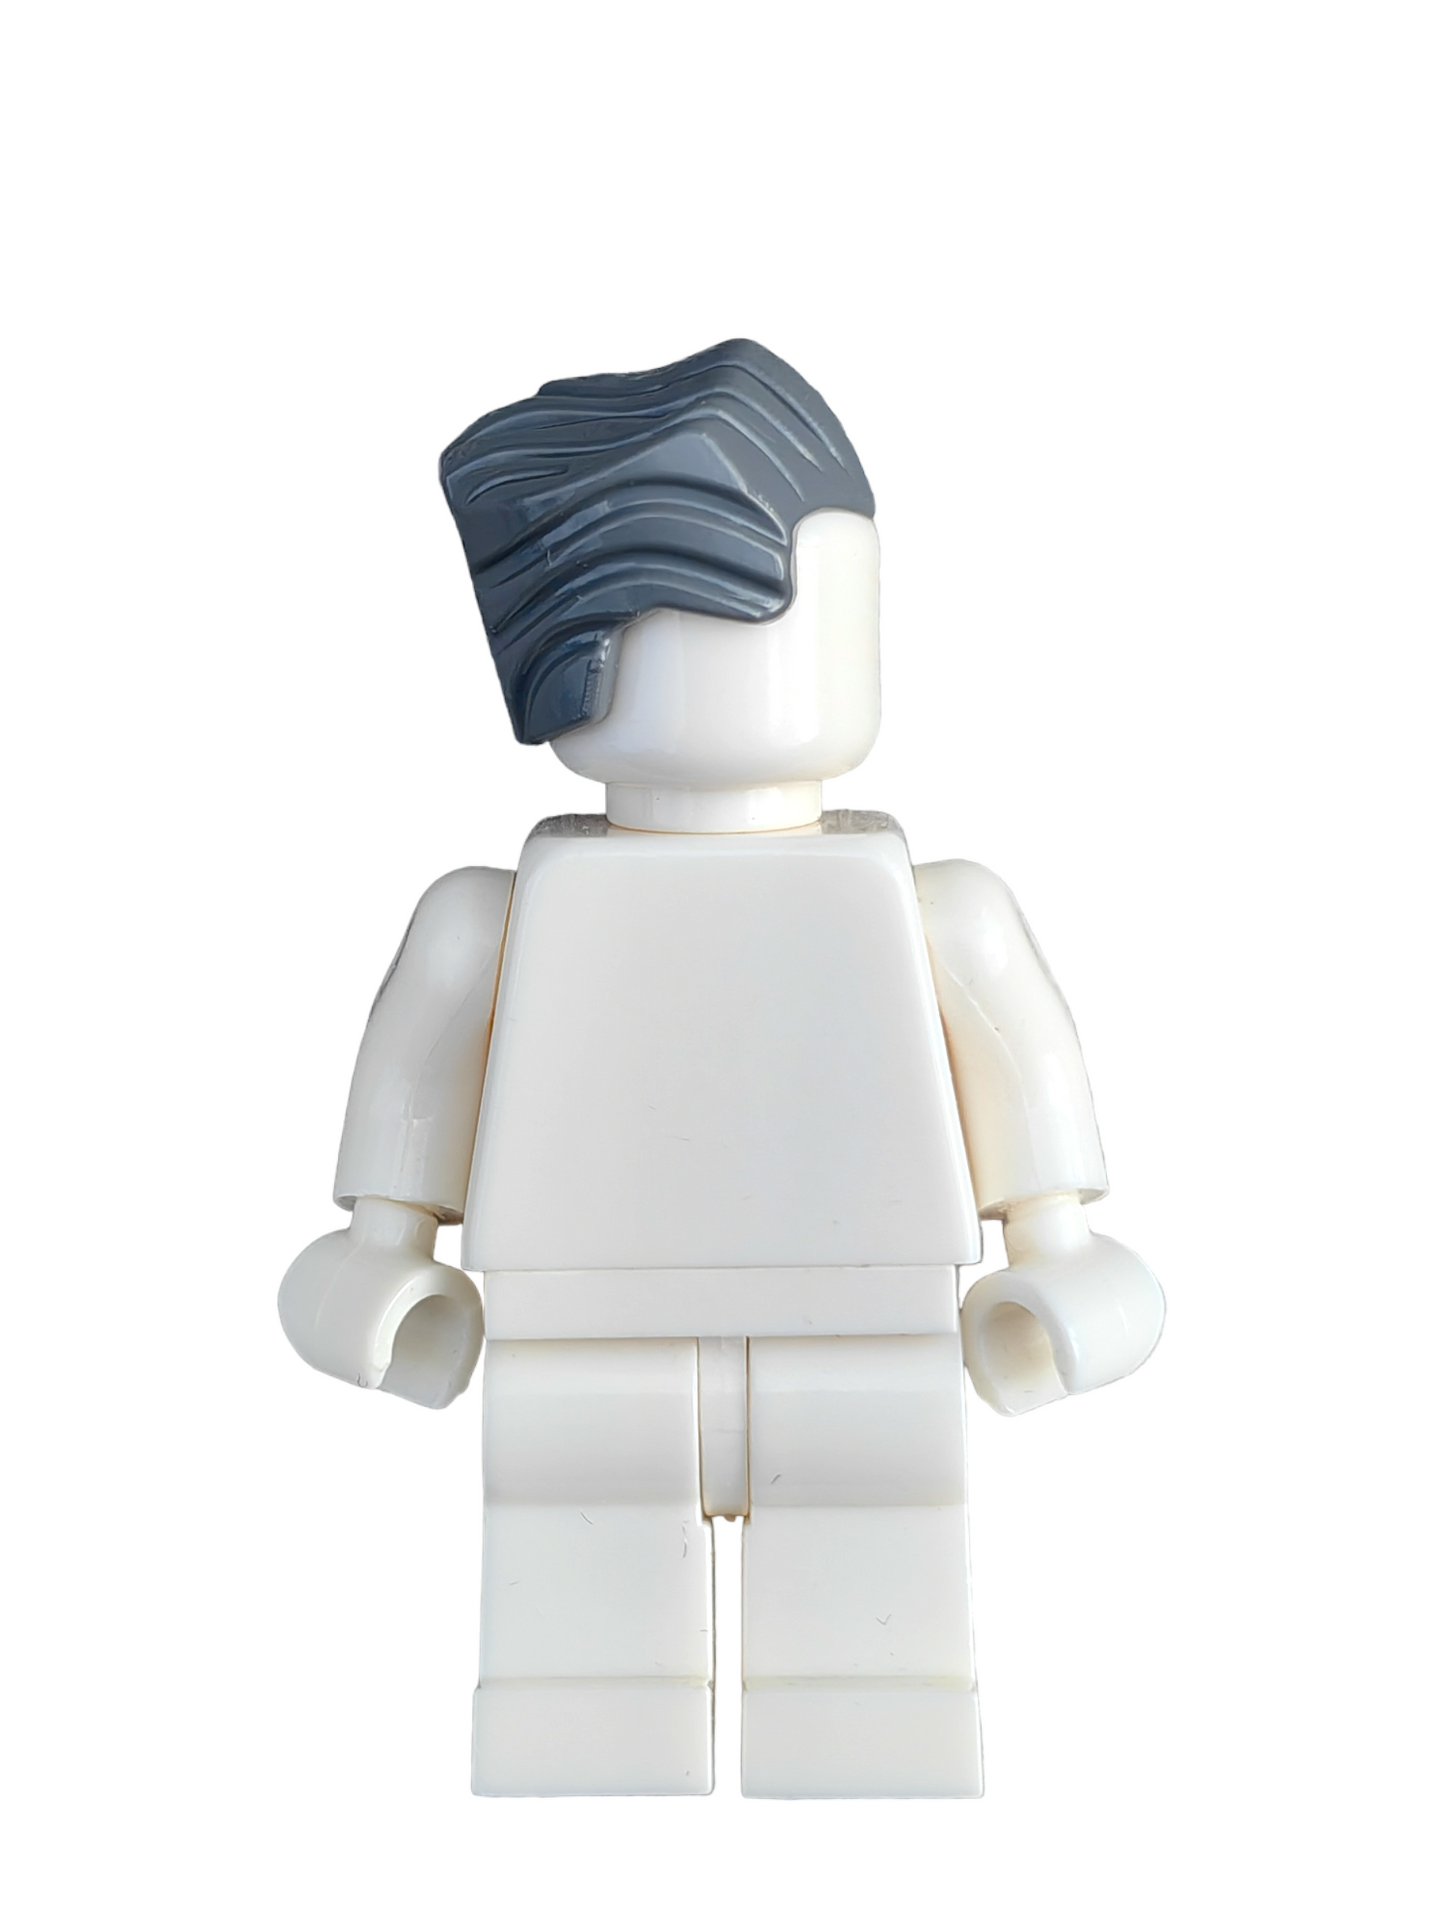 LEGO Wig, Dark Grey Hair Swept Back with a Peak - UB1304